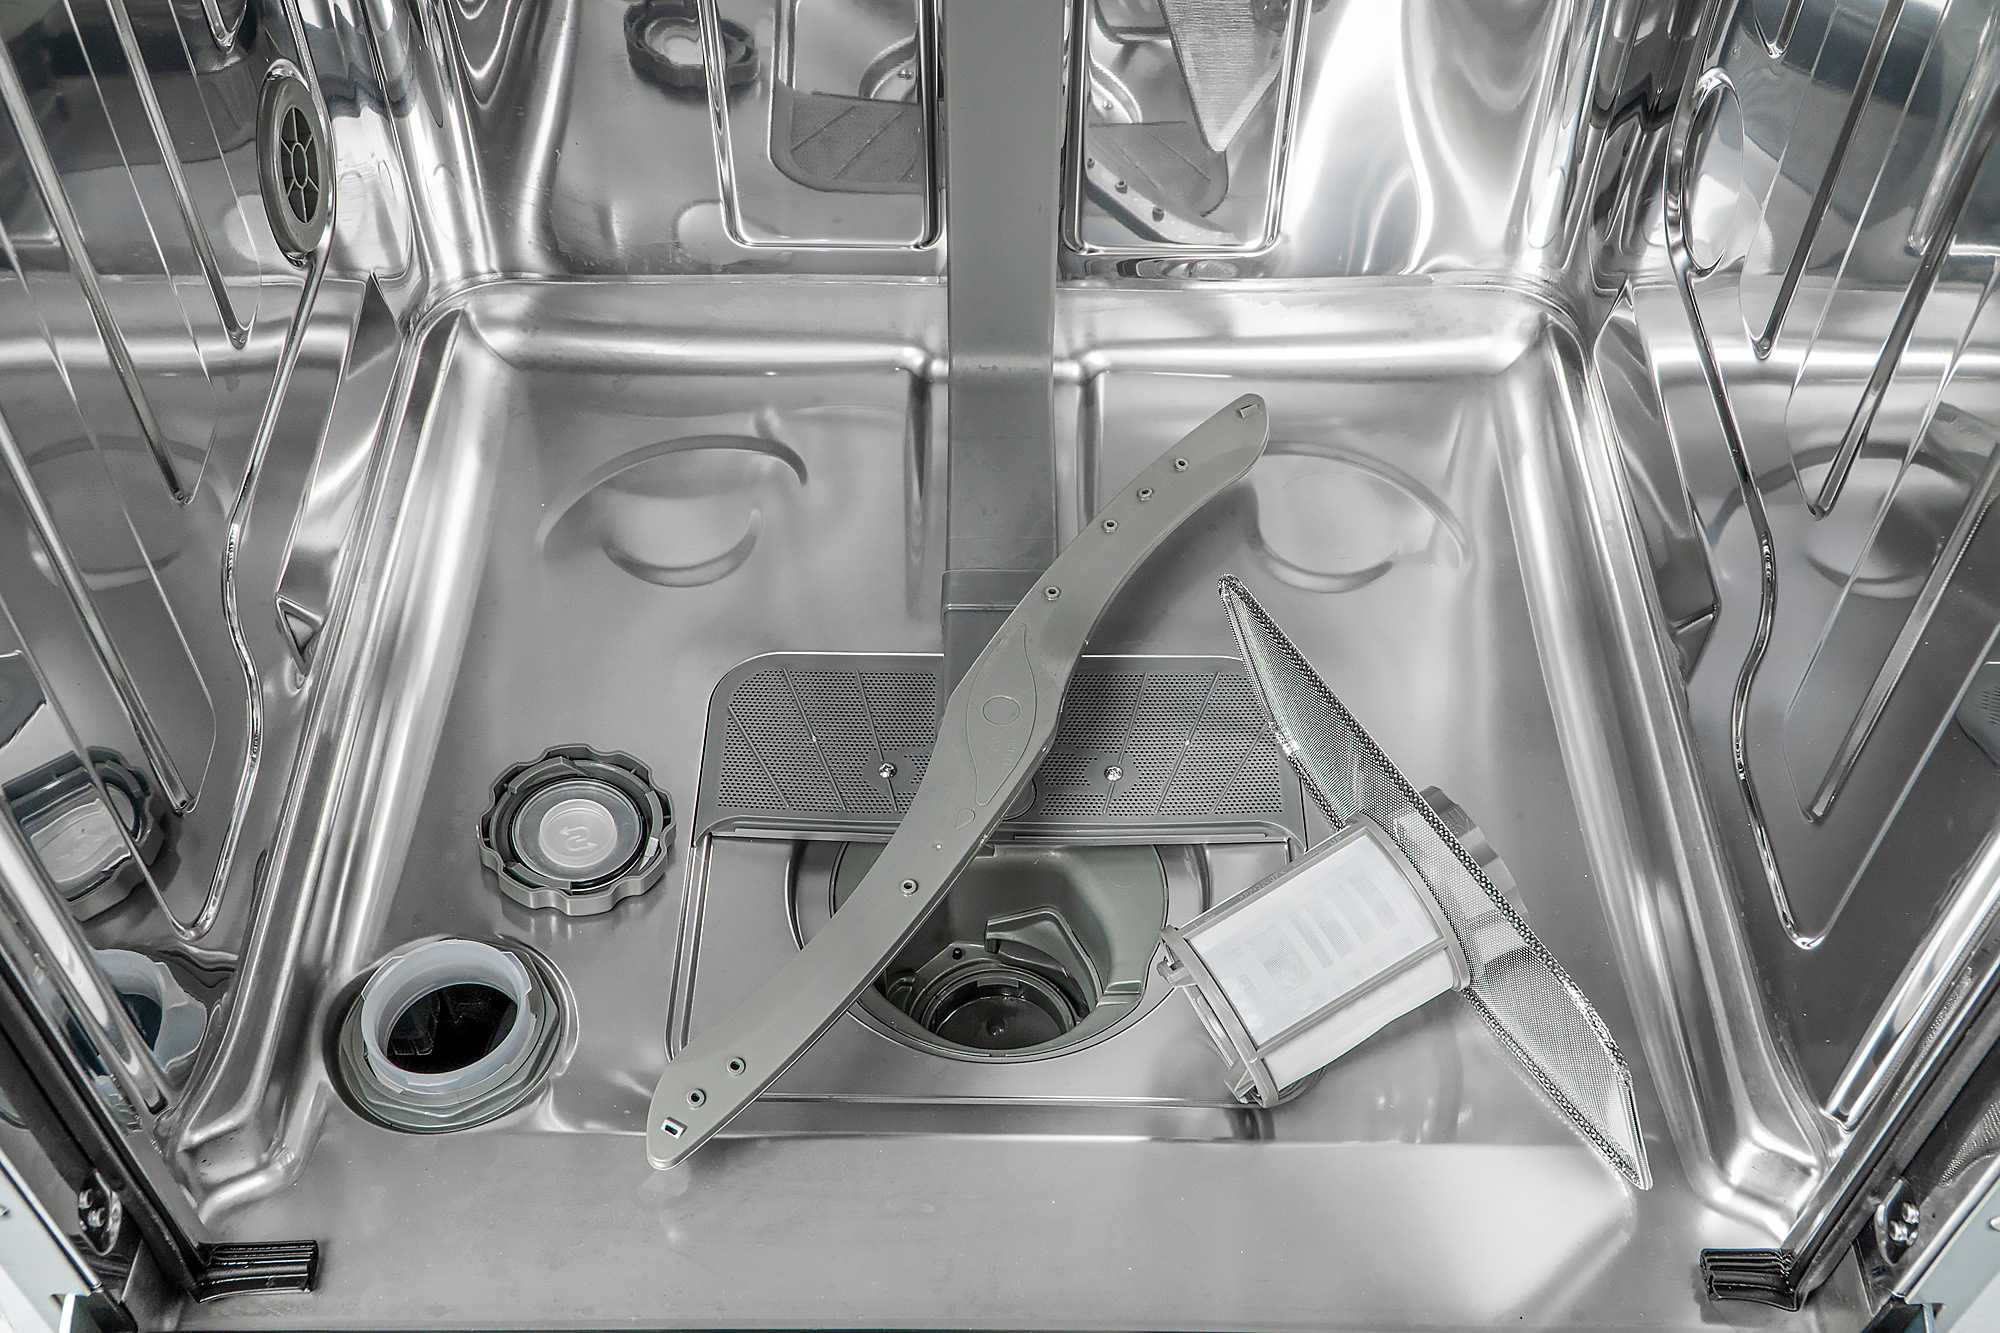 Половинная загрузка посудомоечной машины – что это такое Преимущества и особенности функции Правила расстановки посуды при загрузке наполовину